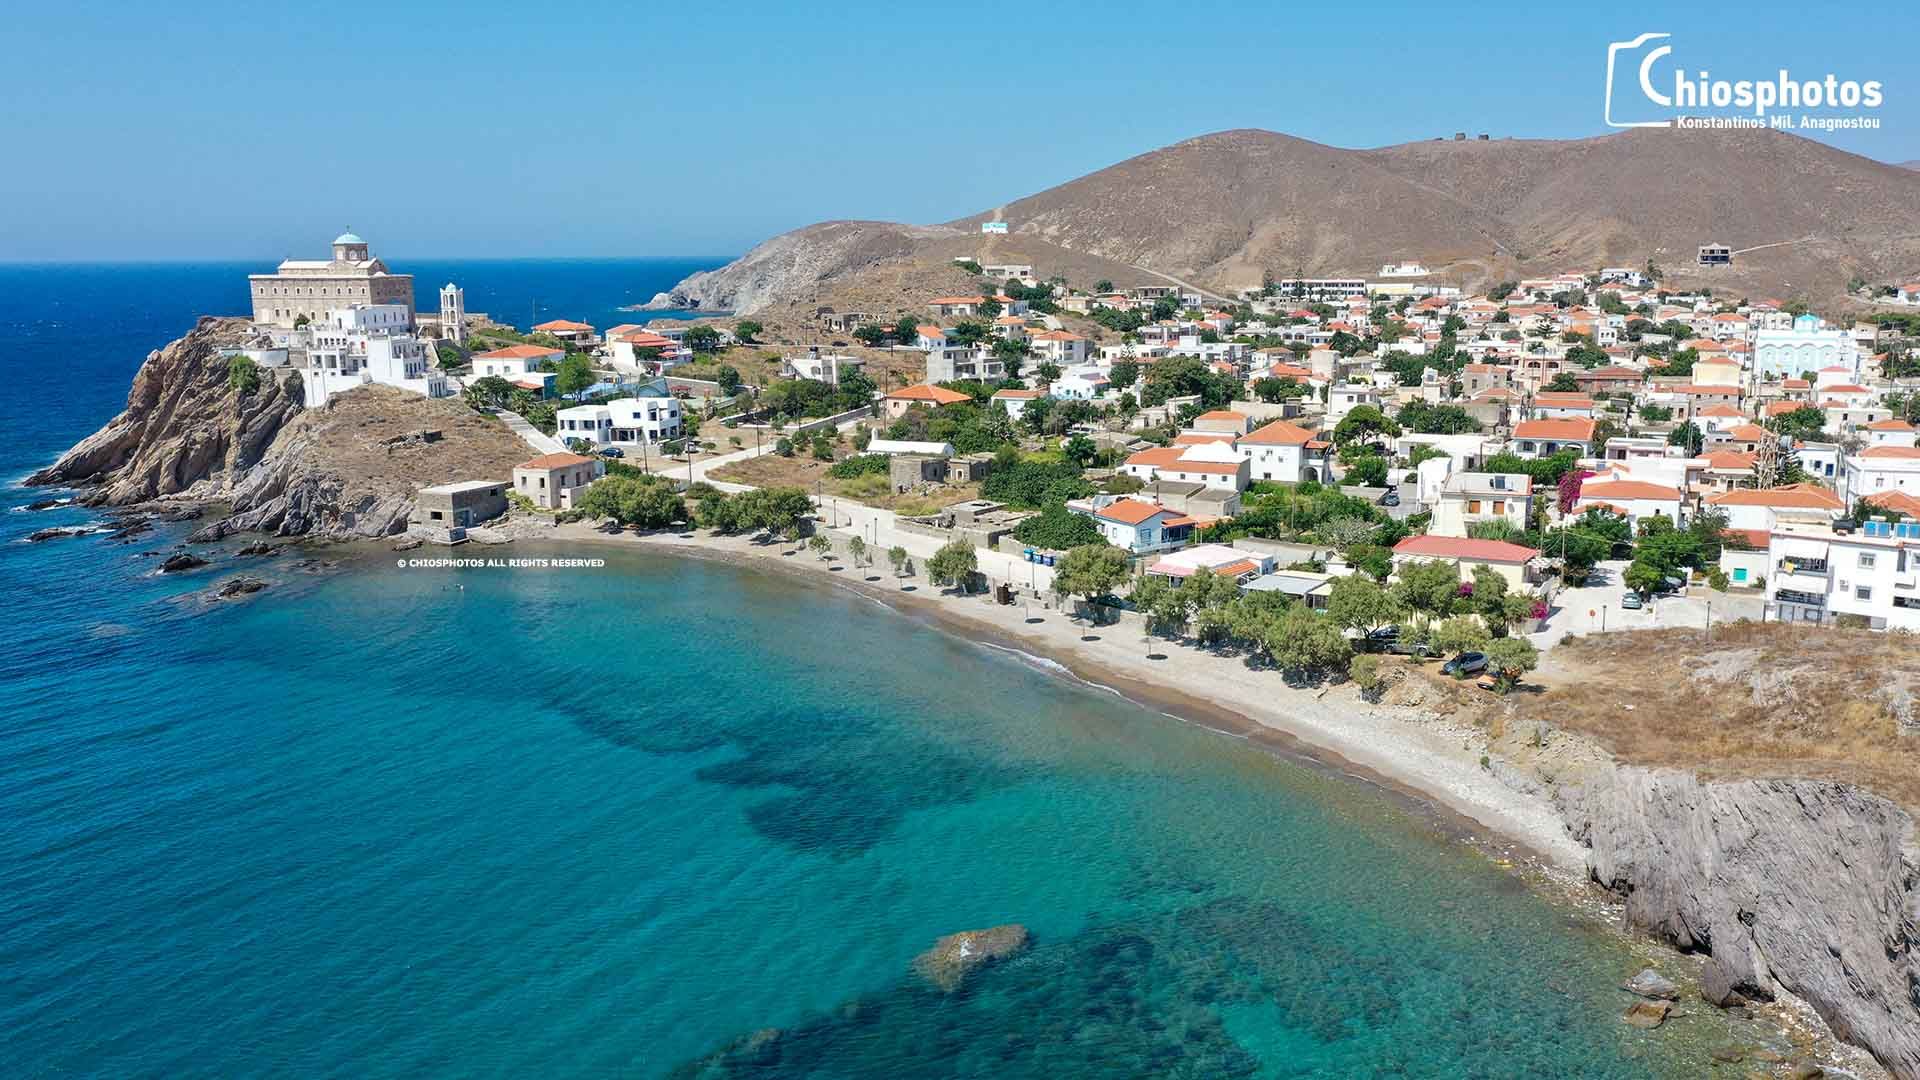 Ψαρά. Το νησί θρύλος της ελληνικής επανάστασης με τις 40 άγνωστες παραλίες. Δείτε από ψηλά την εντυπωσιακή ακτογραμμή (drone)